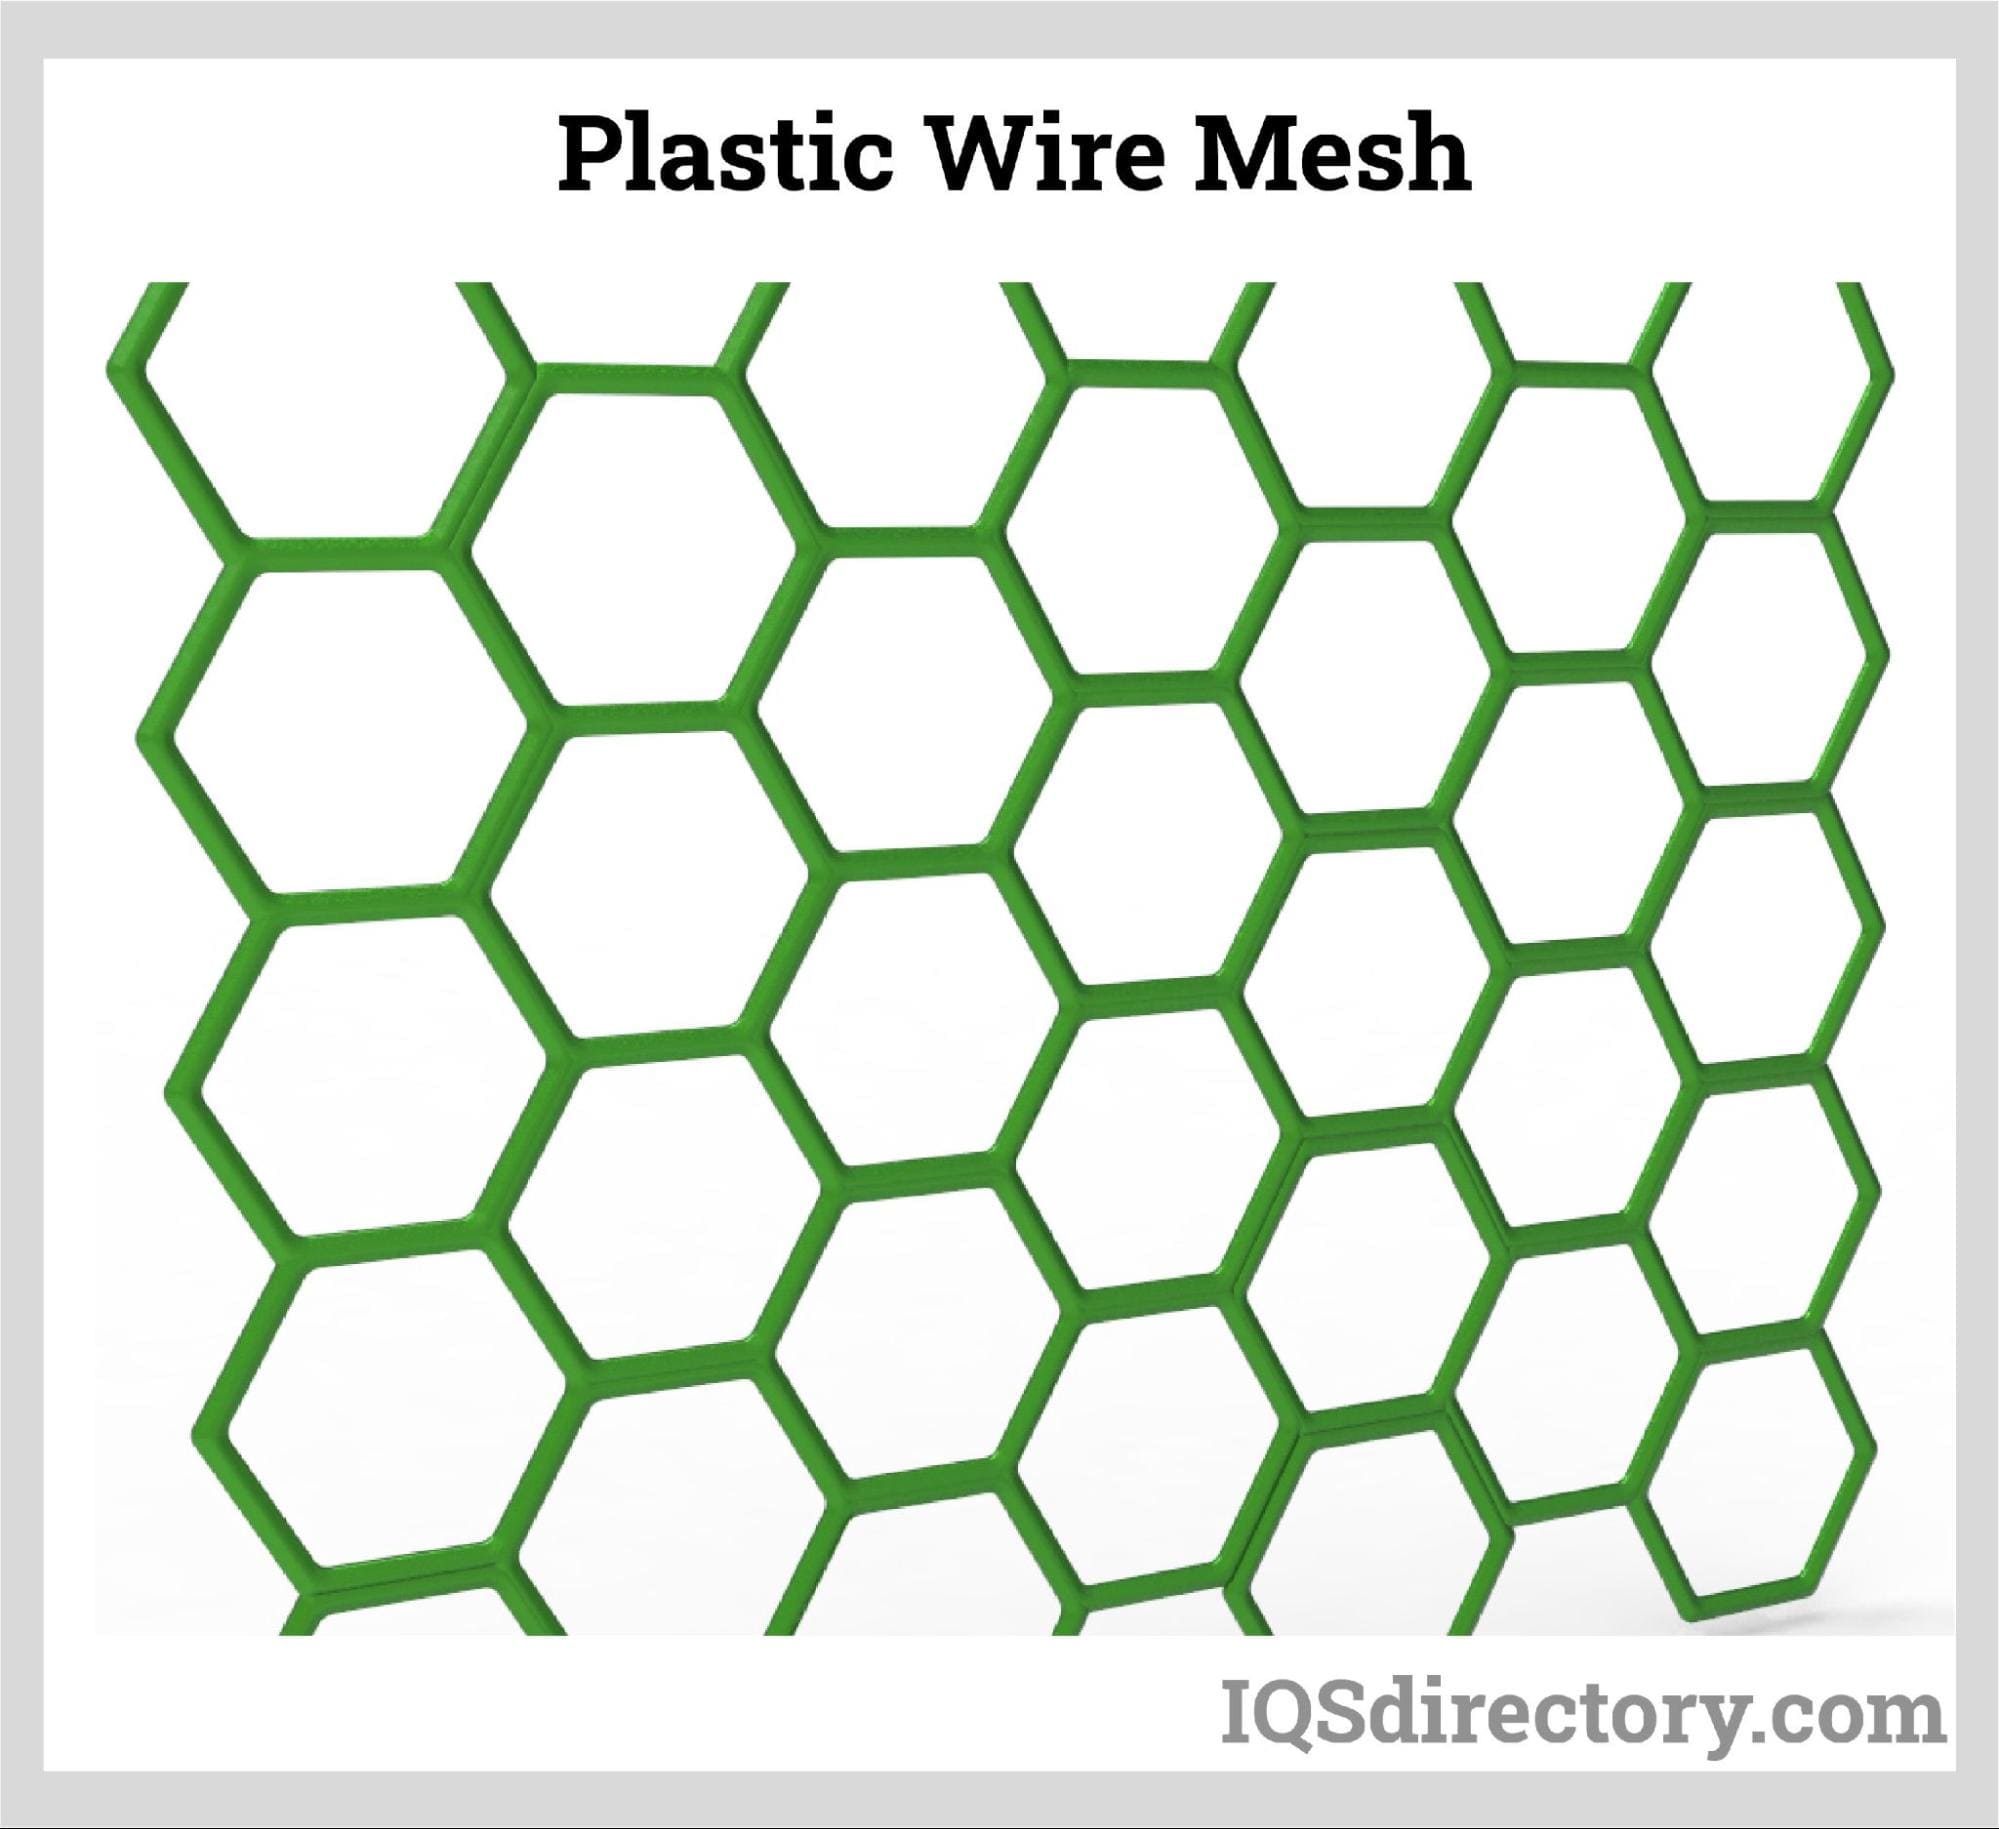 Plastic Wire Mesh